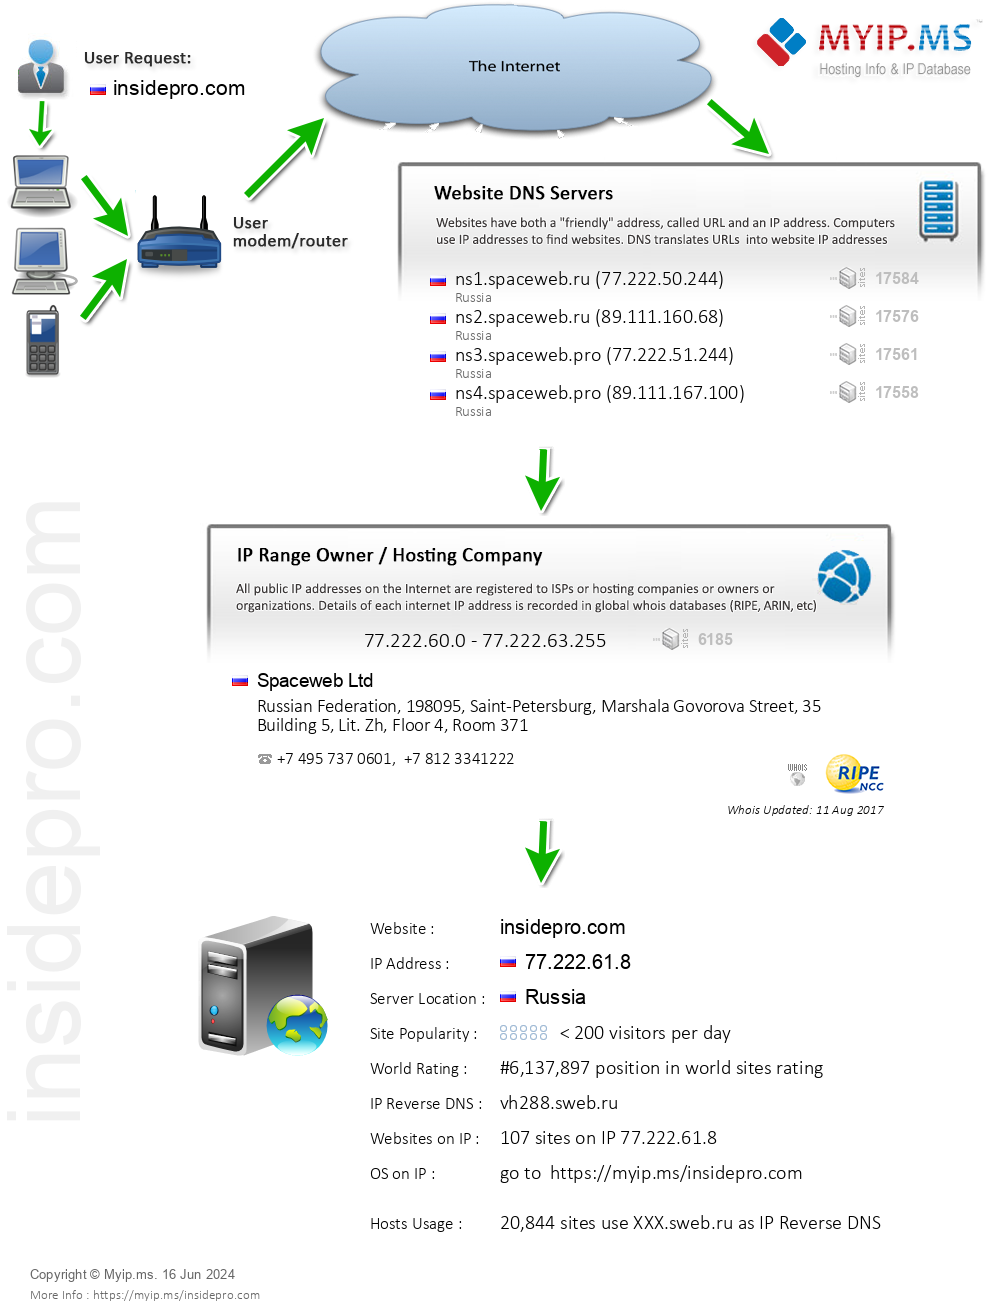 Insidepro.com - Website Hosting Visual IP Diagram